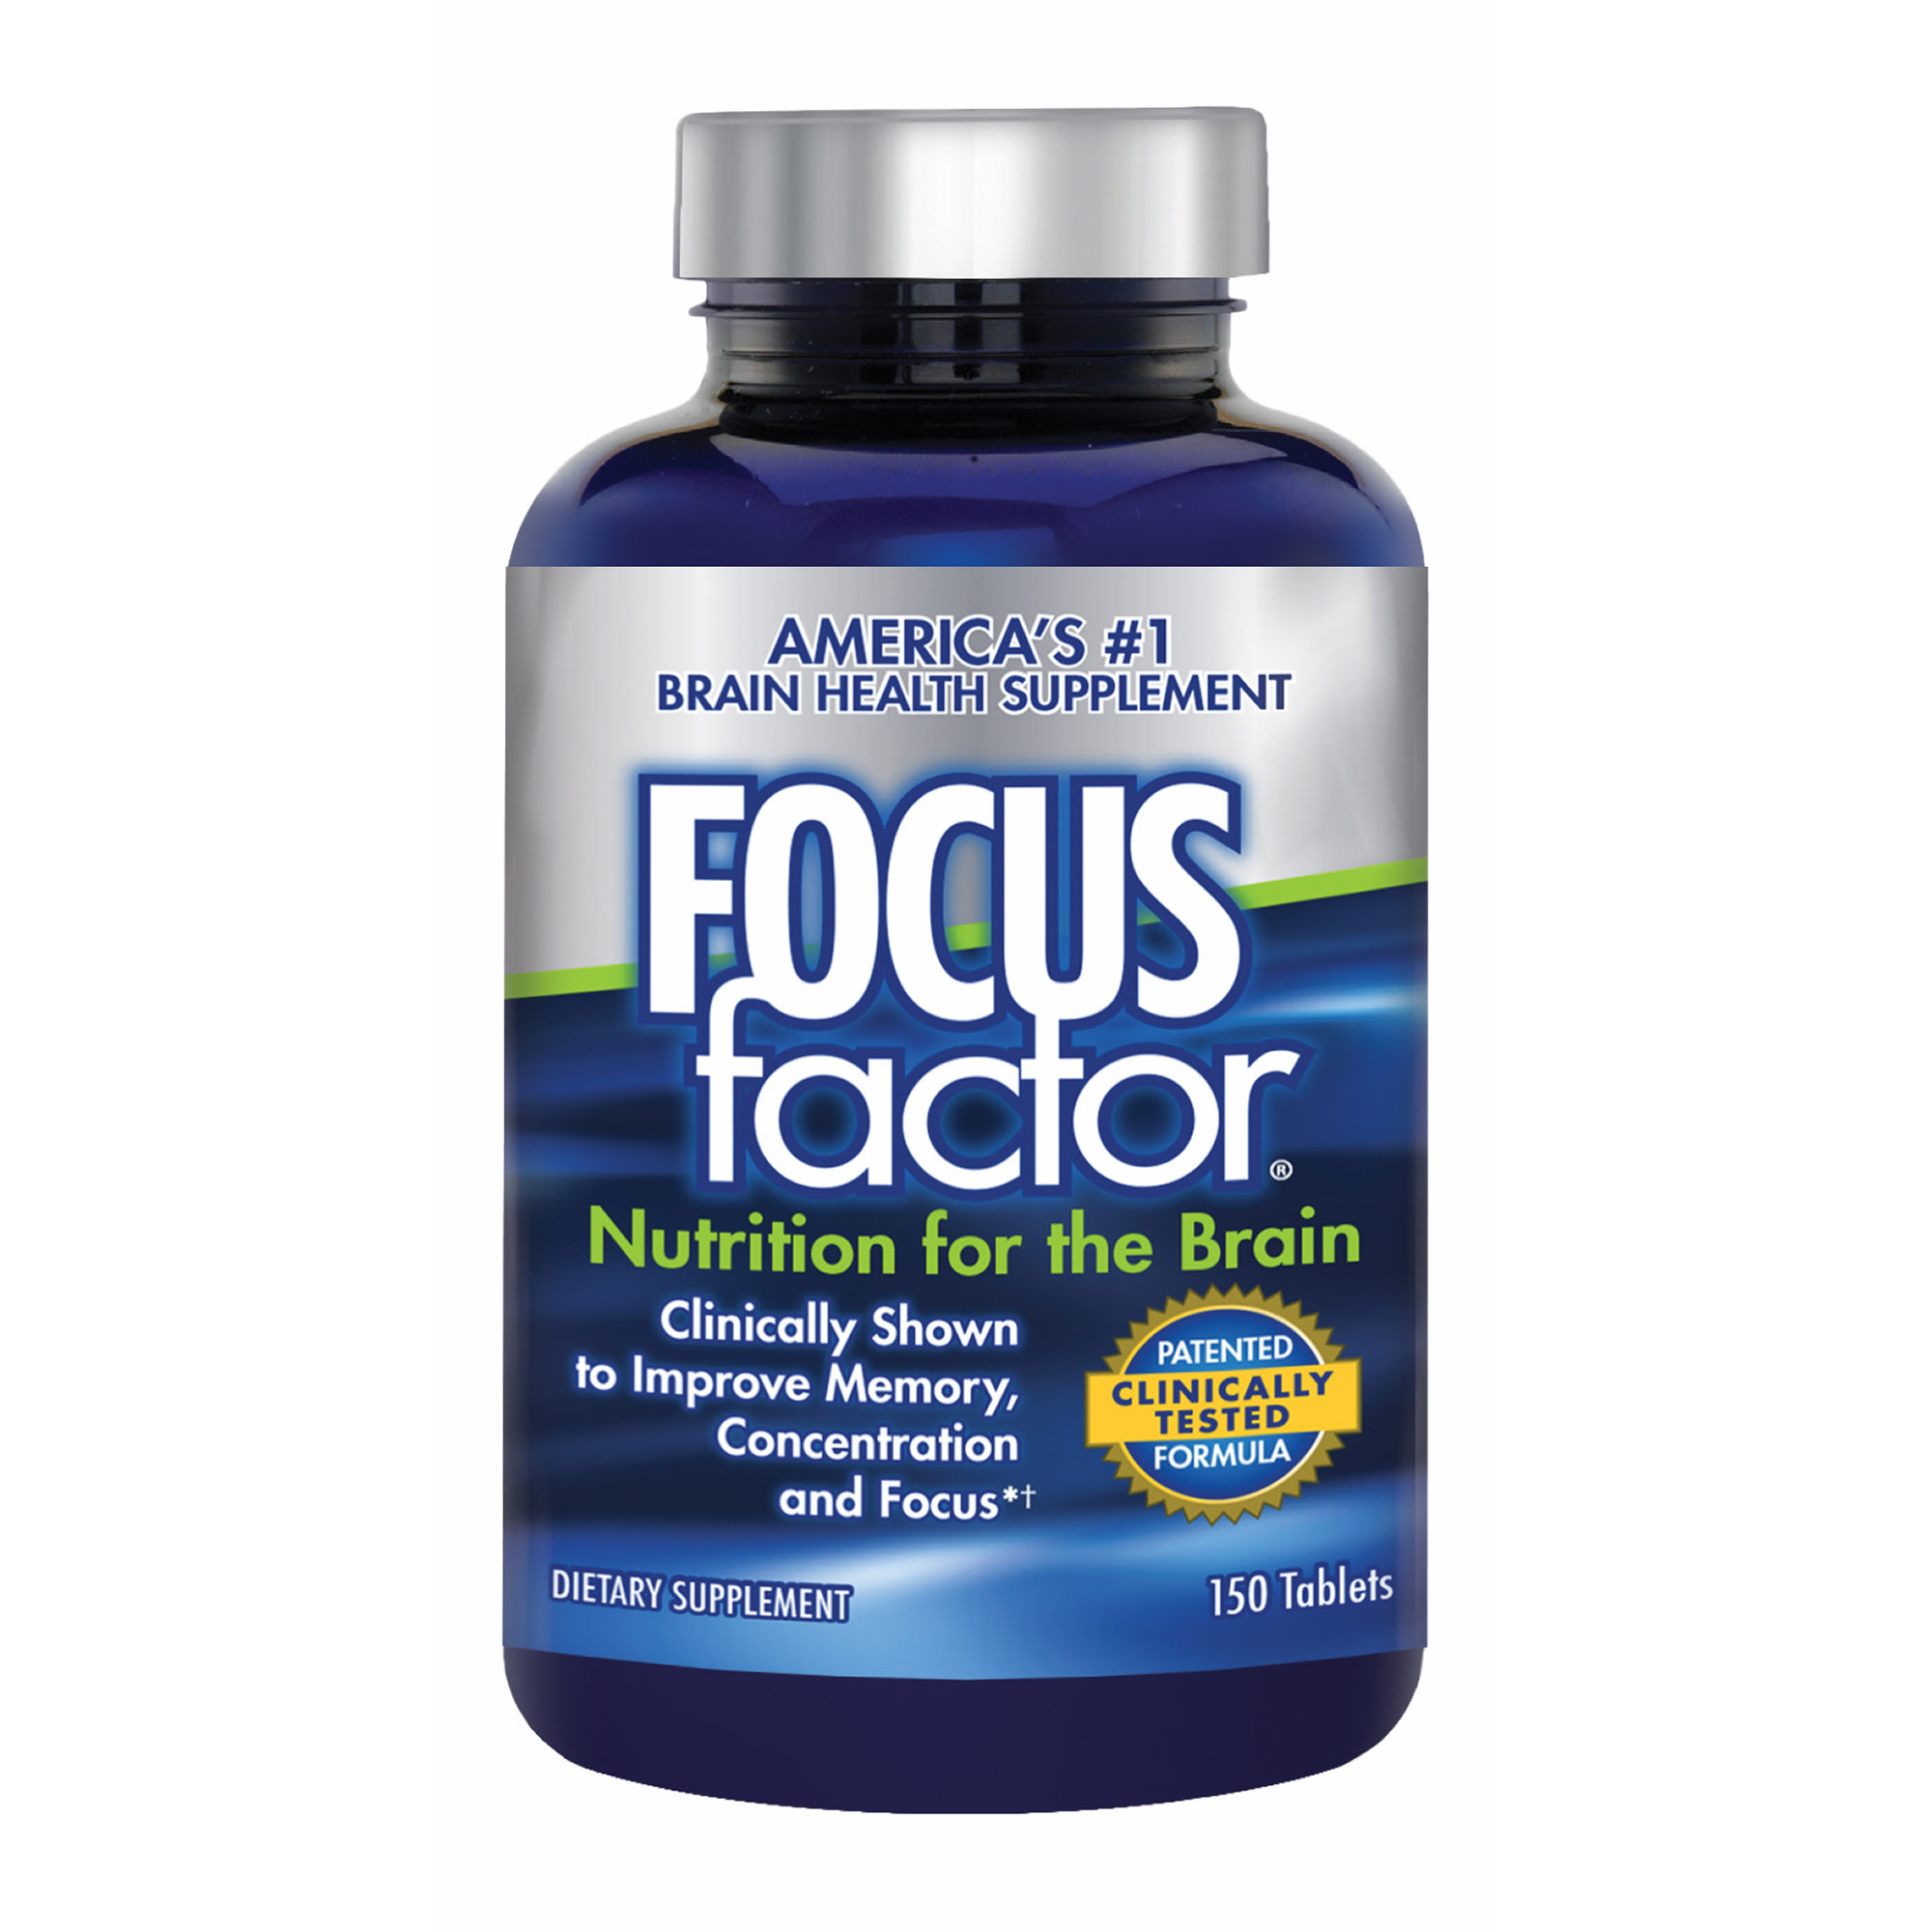 Focus factor dietary supplement - viên uống bổ não, tăng cường trí nhớ cho học sinh và người già, 150 viên